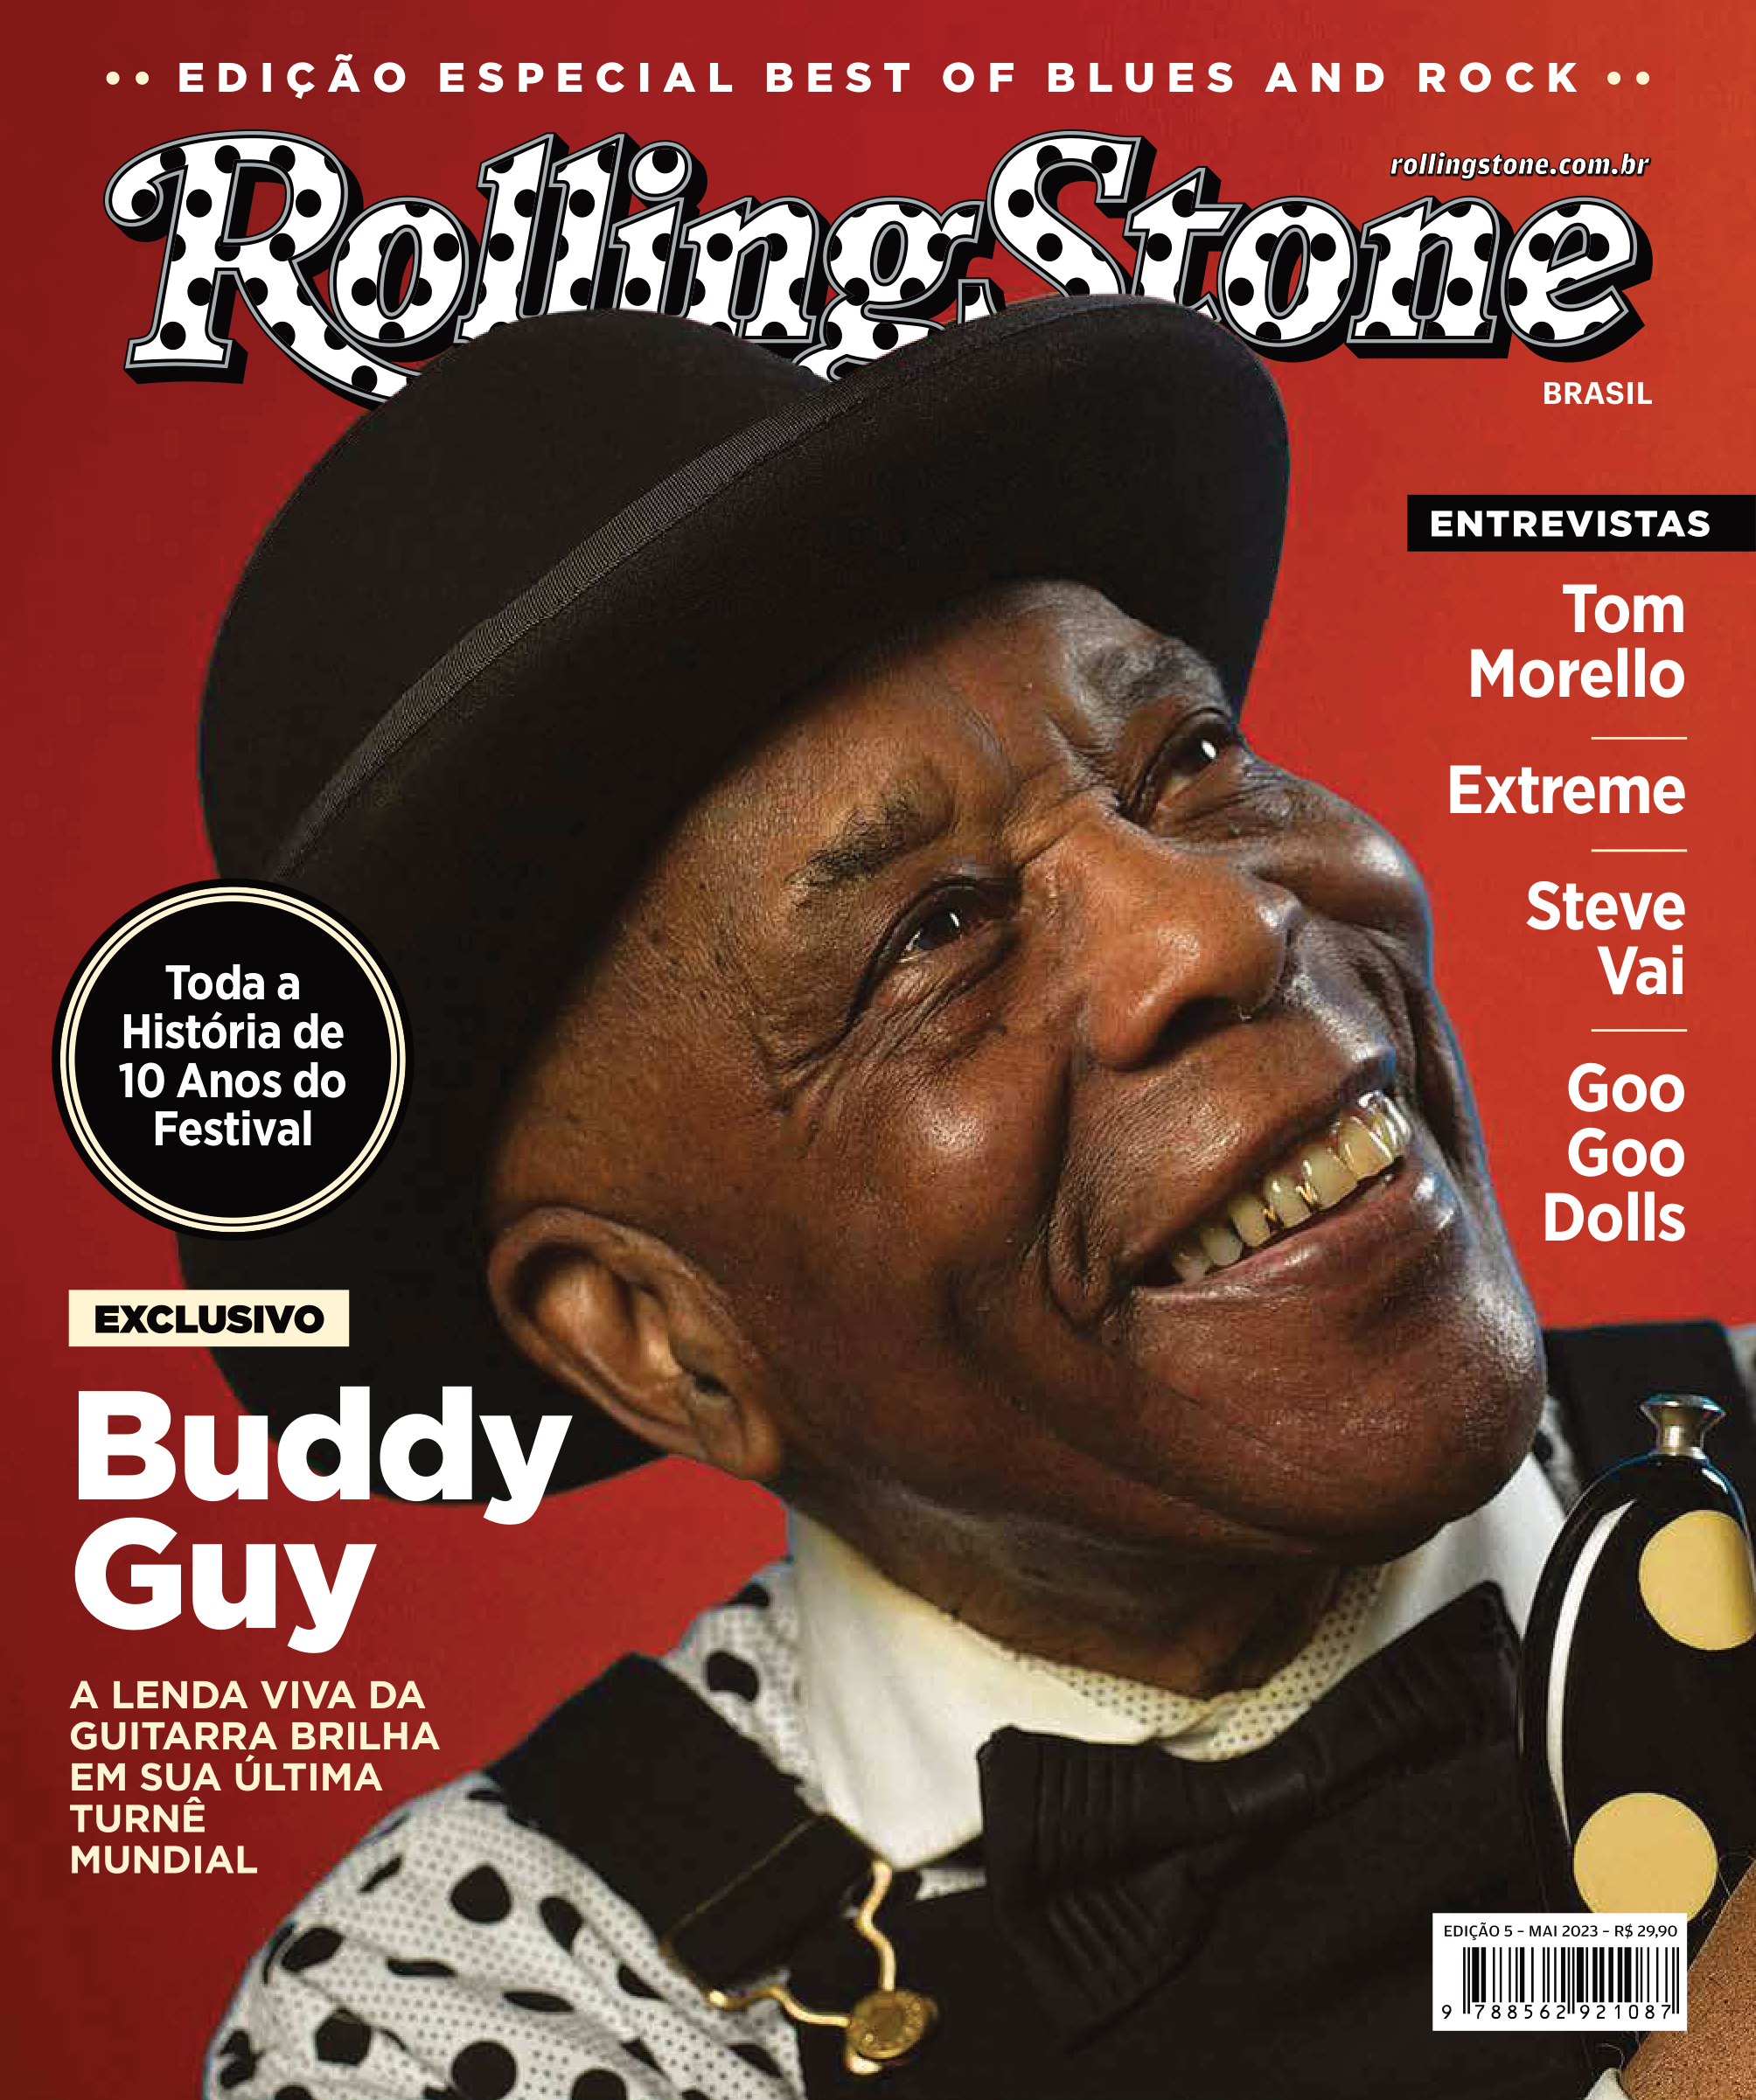 Buddy Guy para a capa da Rolling Stone Brasil (Reprodução)